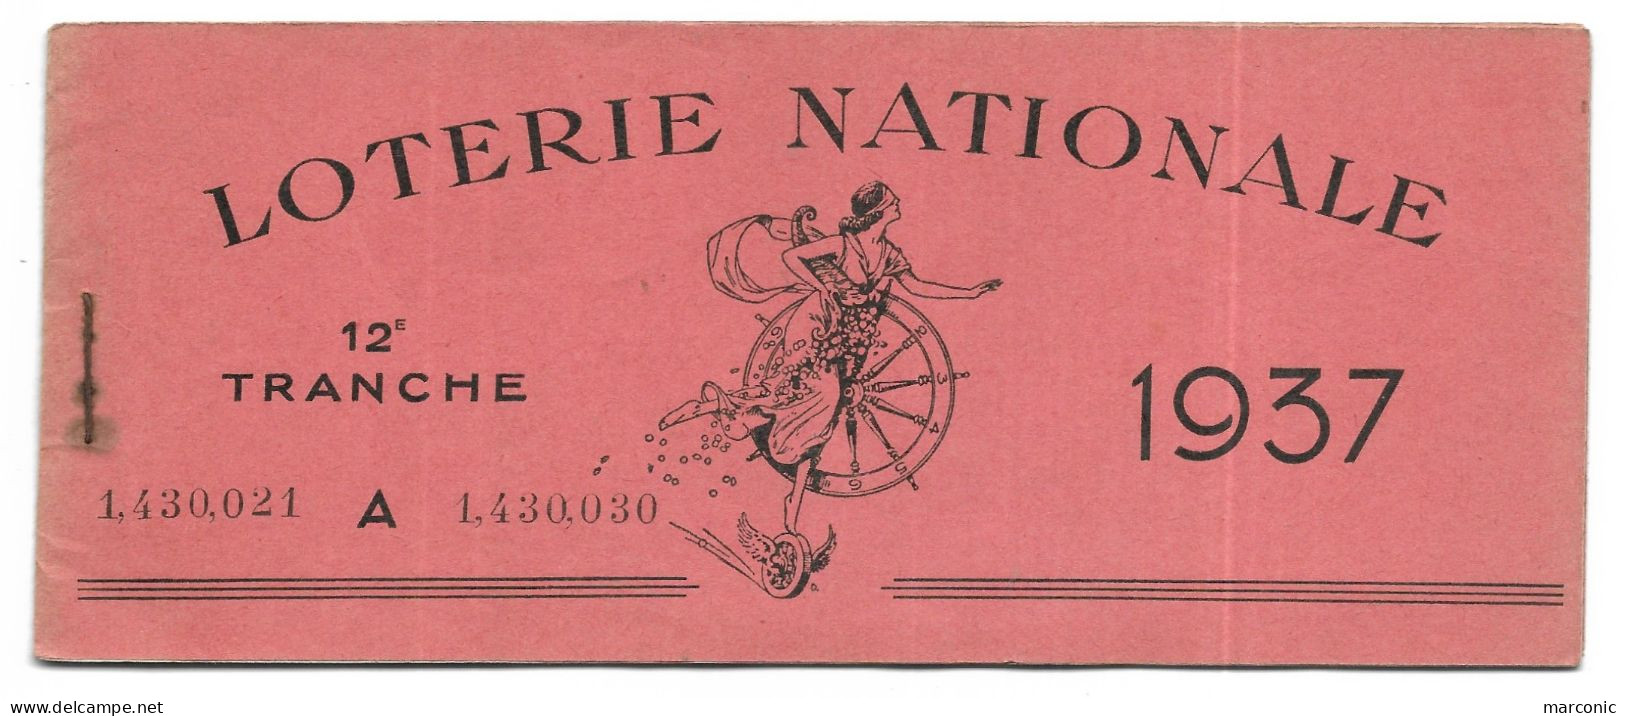 Carnet 9 Billets De Loterie Nationale 1937, 12e Tranche - Billets De Loterie